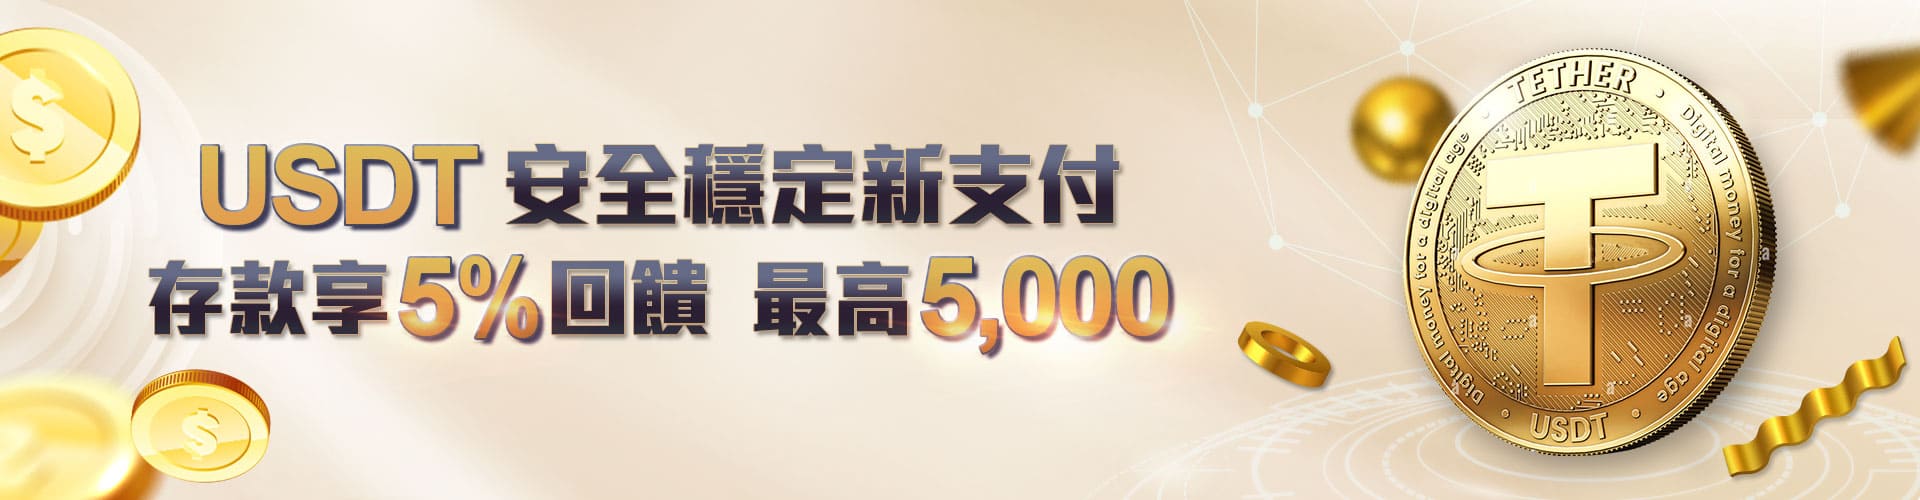 財神娛樂城 - USDT安全穩定新支付存款享5%回饋 最高5000